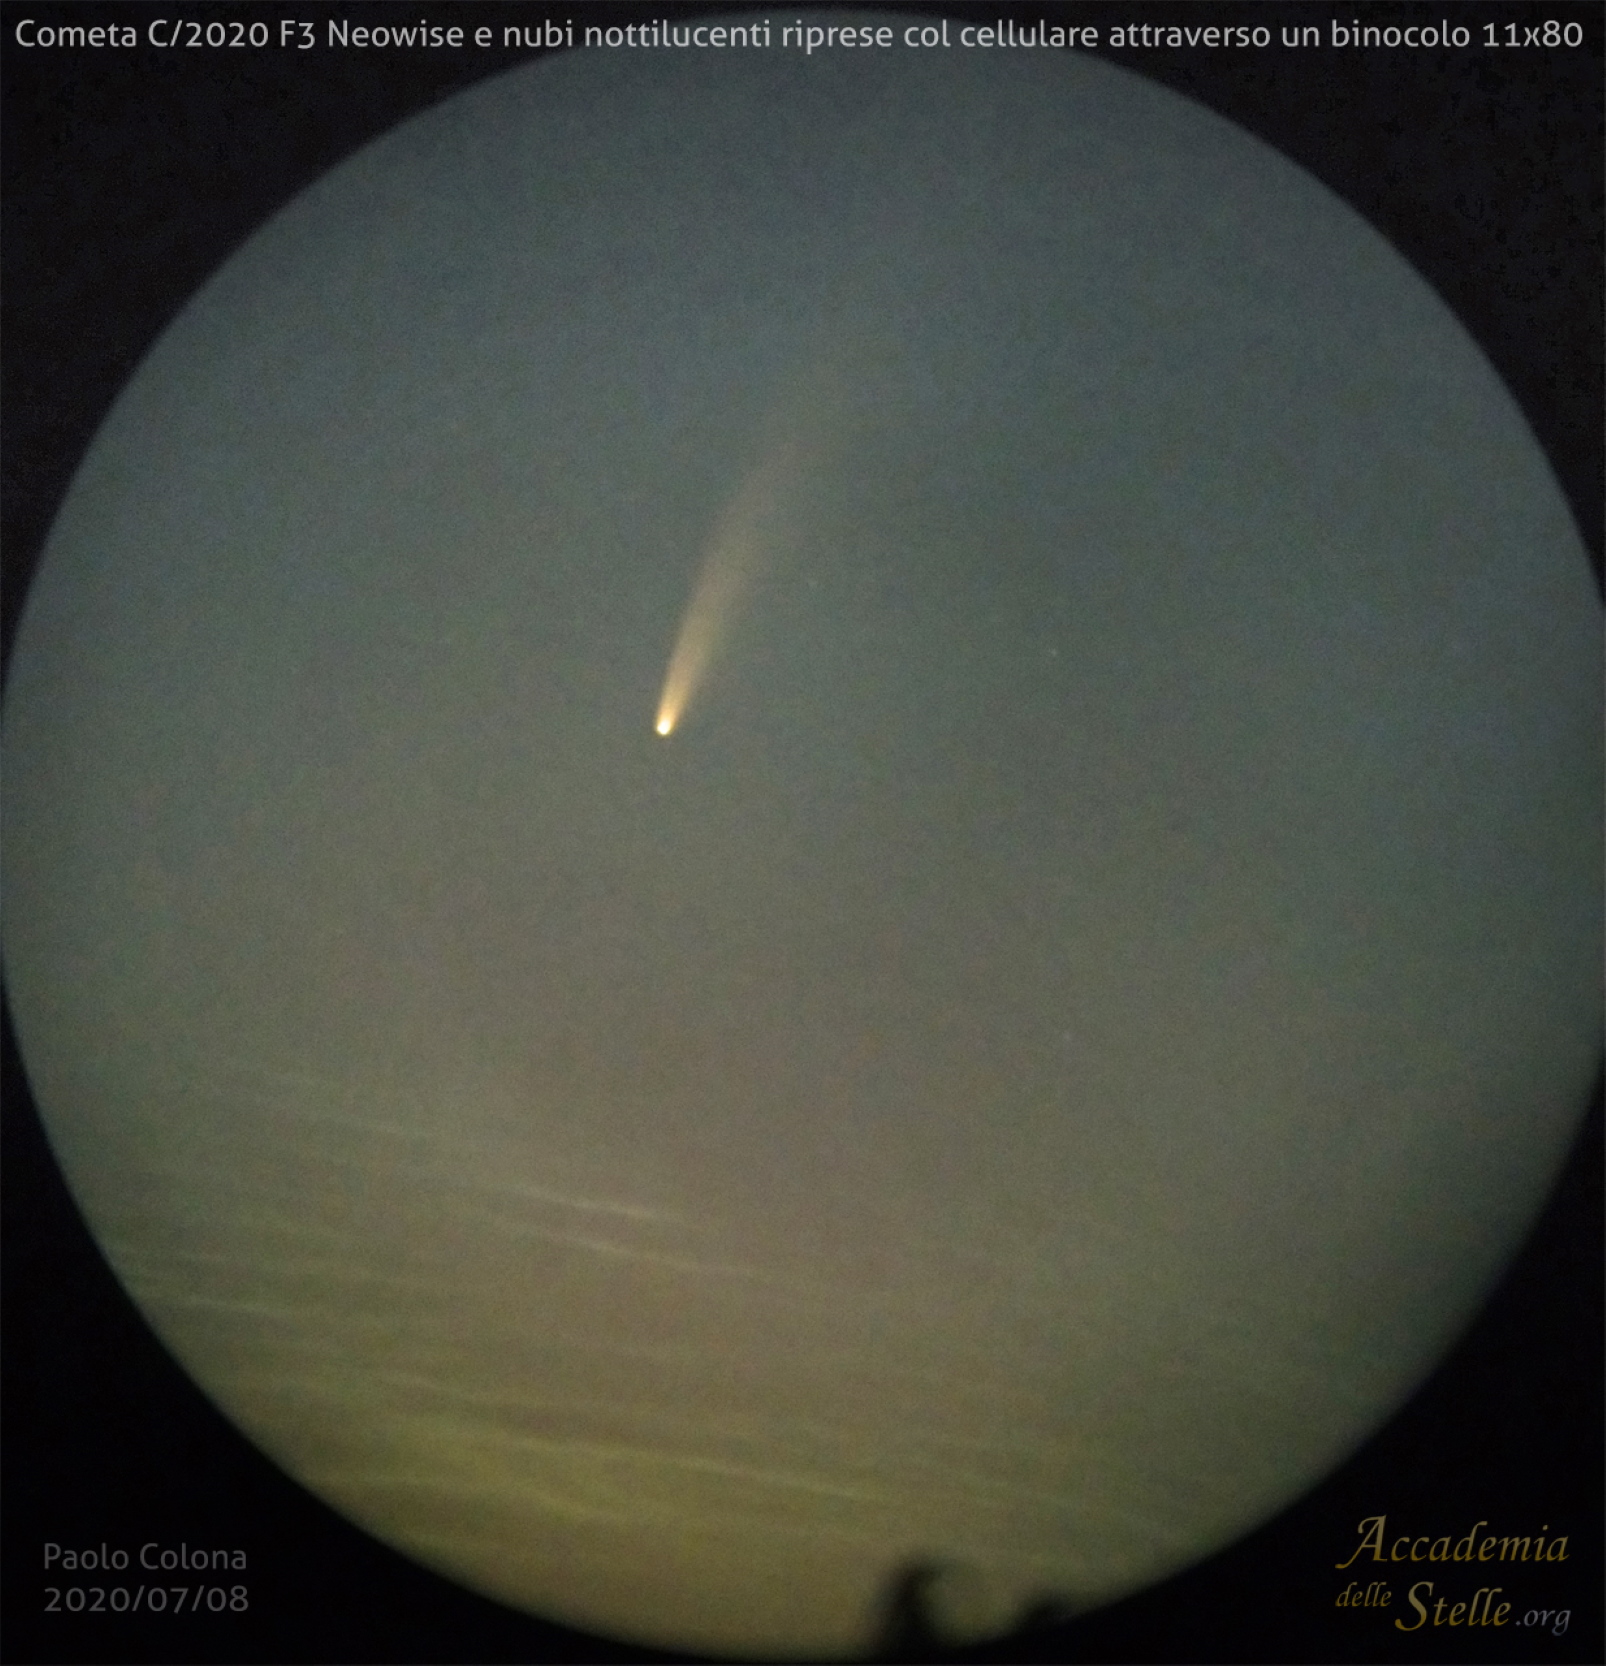 La cometa C/2020 F3 Neowise ripresa l'8 luglio con uno smartphone attraverso un binocolo insieme alle nubi nottilucenti.
Dati tecnici: Xiaomi A3, esposizione di 2s, 3200 ISO in afocale con un binocolo Skymaster 11x80.